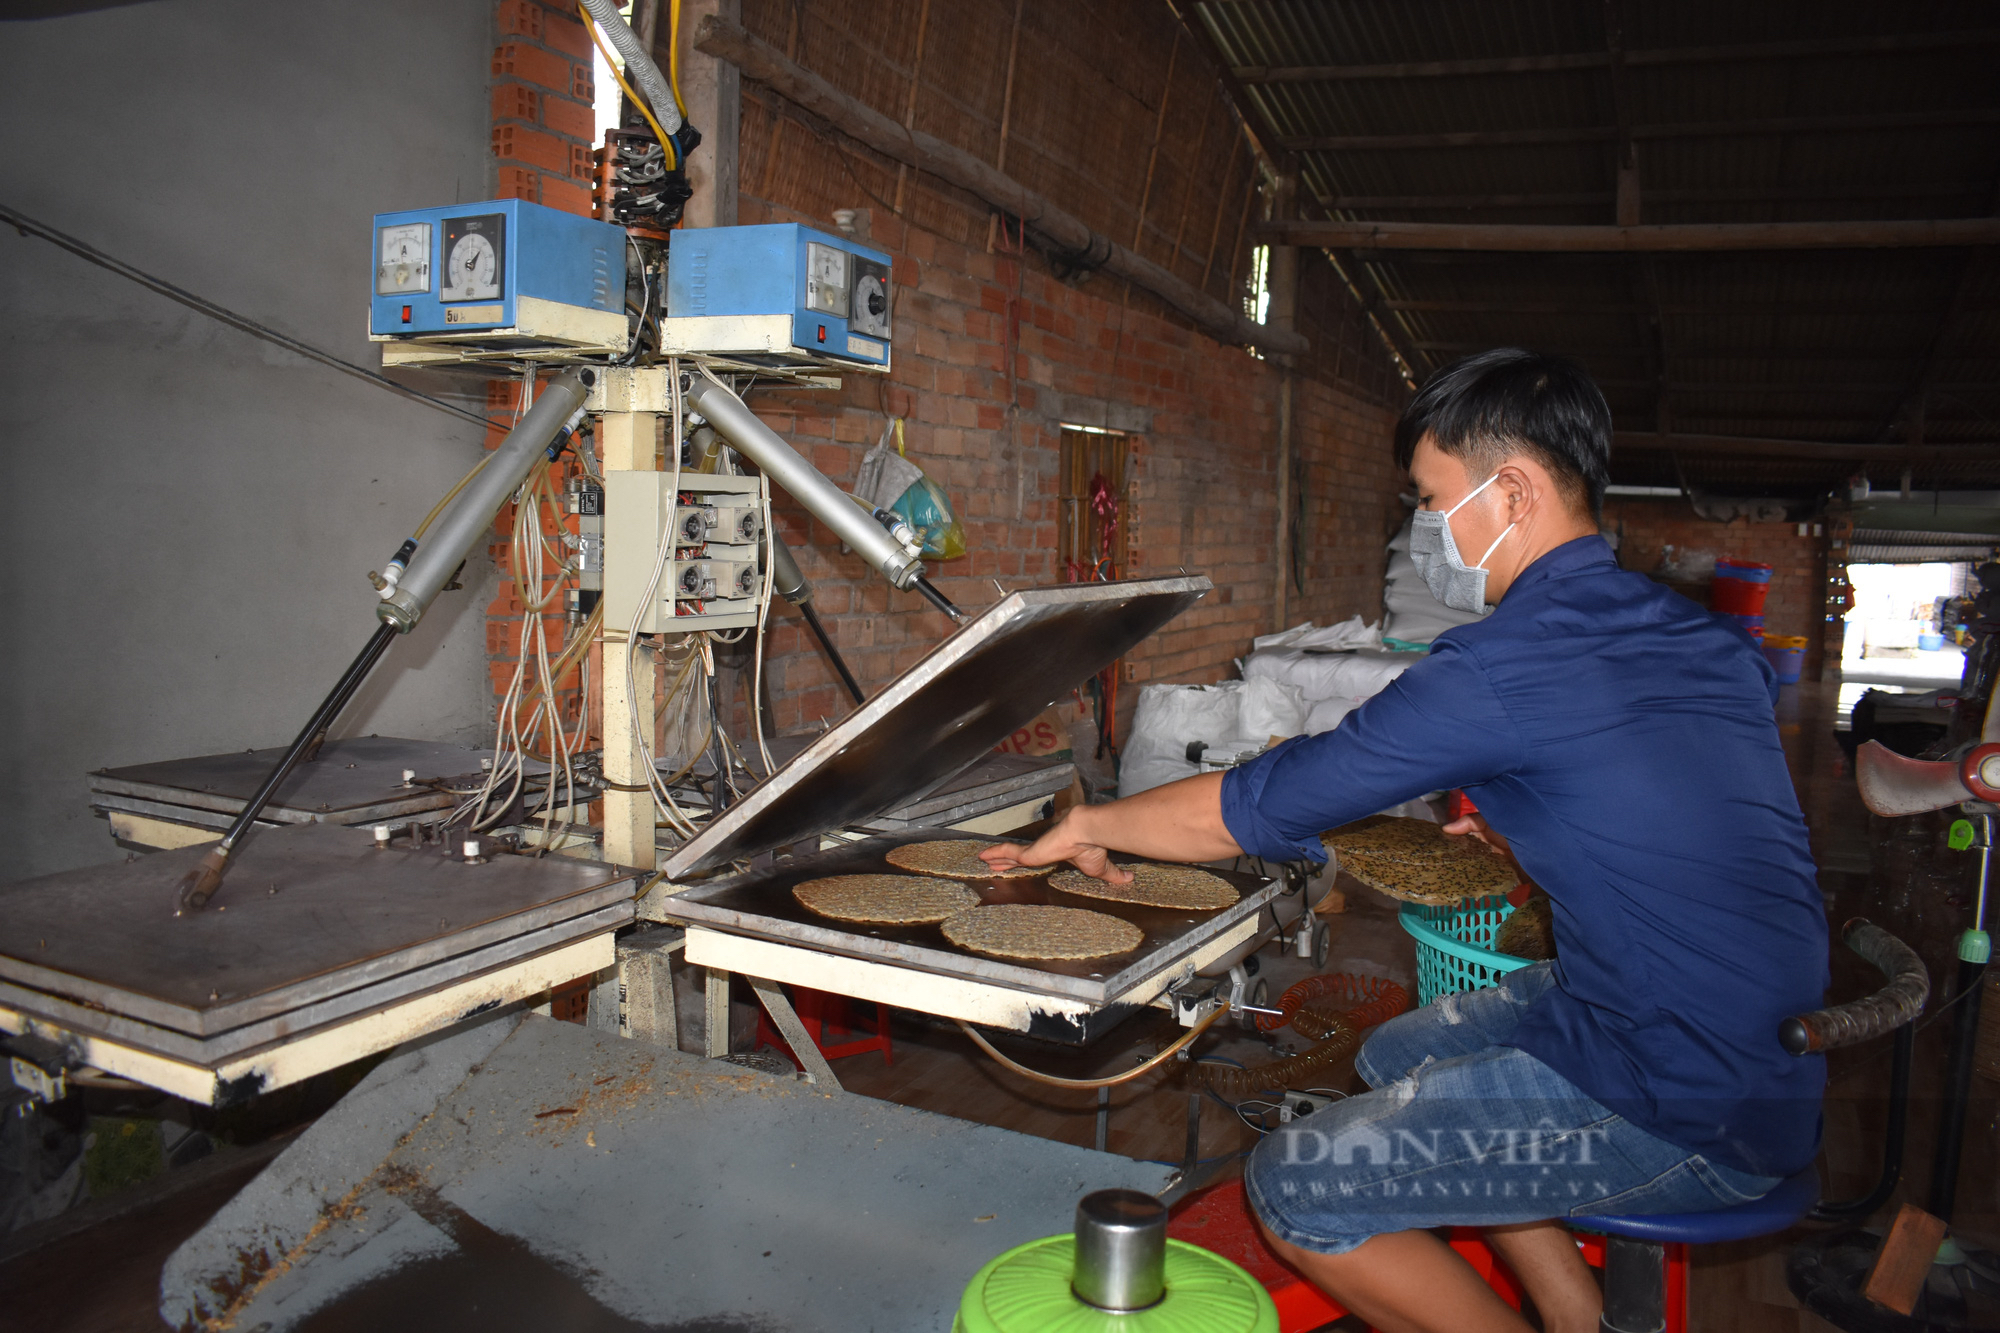 Anh nông dân Tây Ninh sáng chế máy gắp mía vừa nhanh, vừa khoẻ, cả làng trầm trồ khen siêu - Ảnh 3.